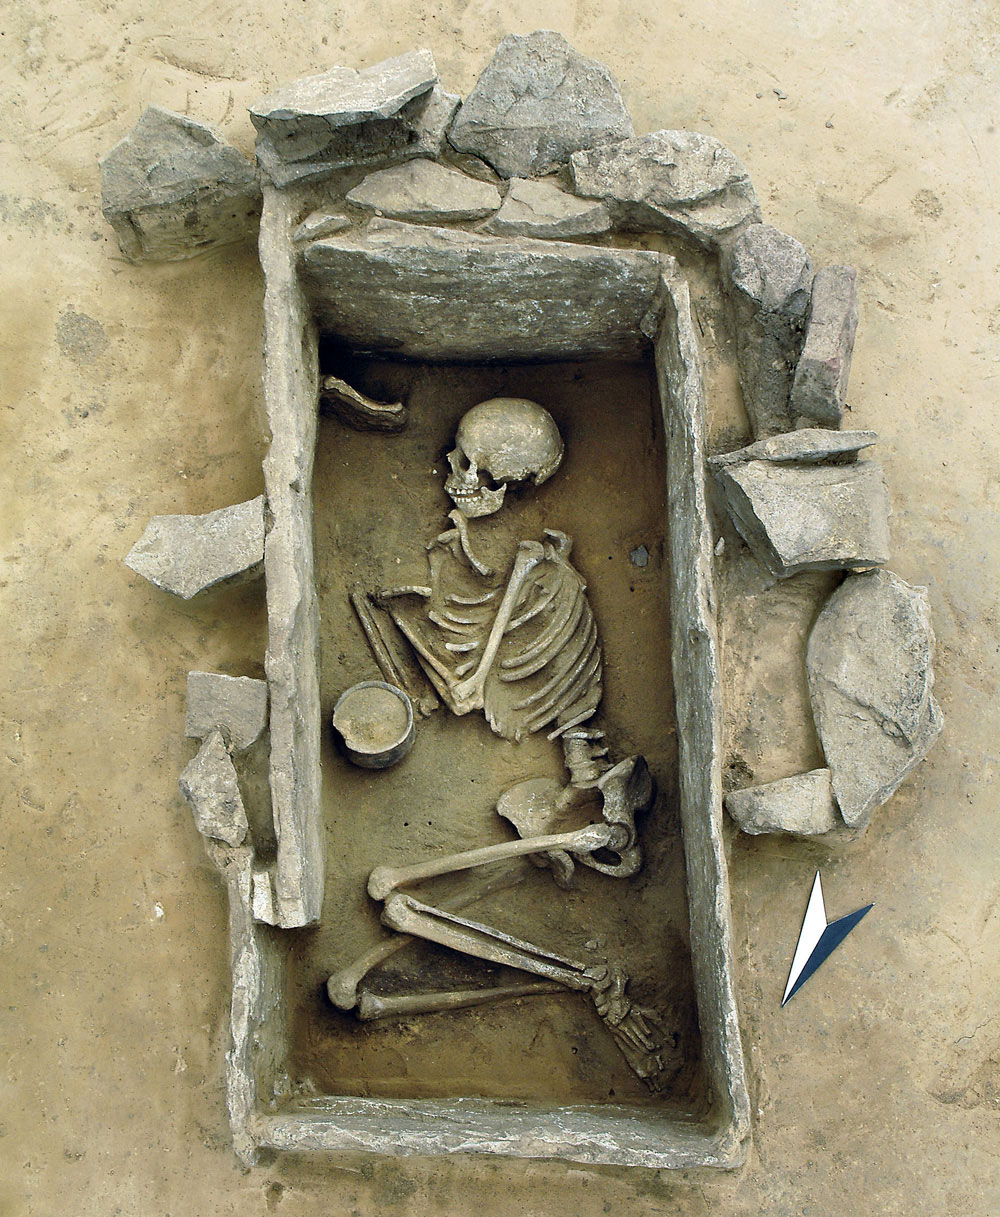 ドイツ・ザクセンアンハルトで発見された、後期新石器時代の鐘状ビーカー文化のものと見られる若い女性の箱式石棺墓。